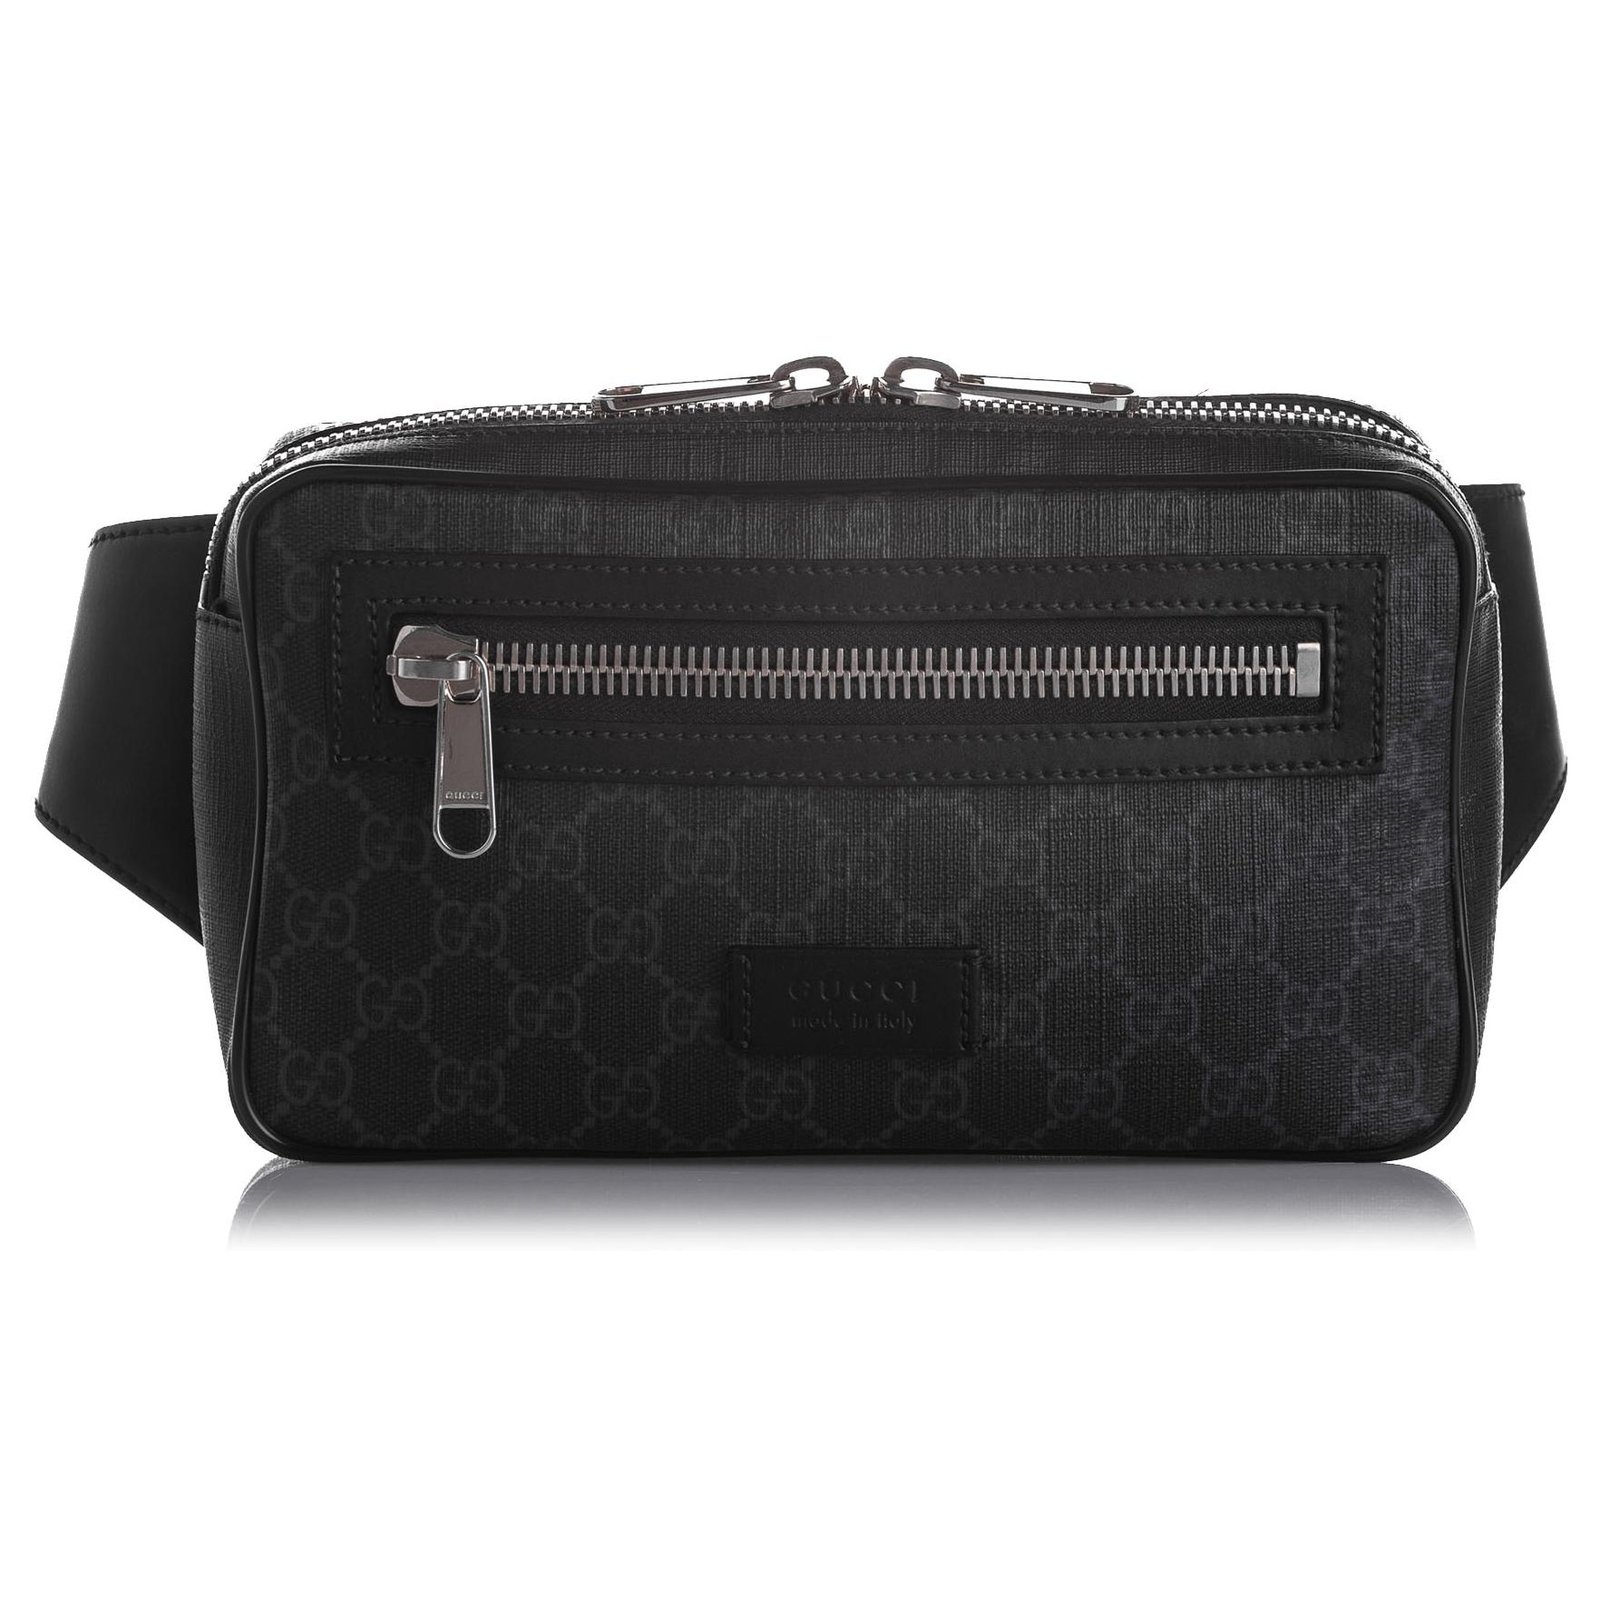 Gucci black Leather GG Supreme Belt Bag